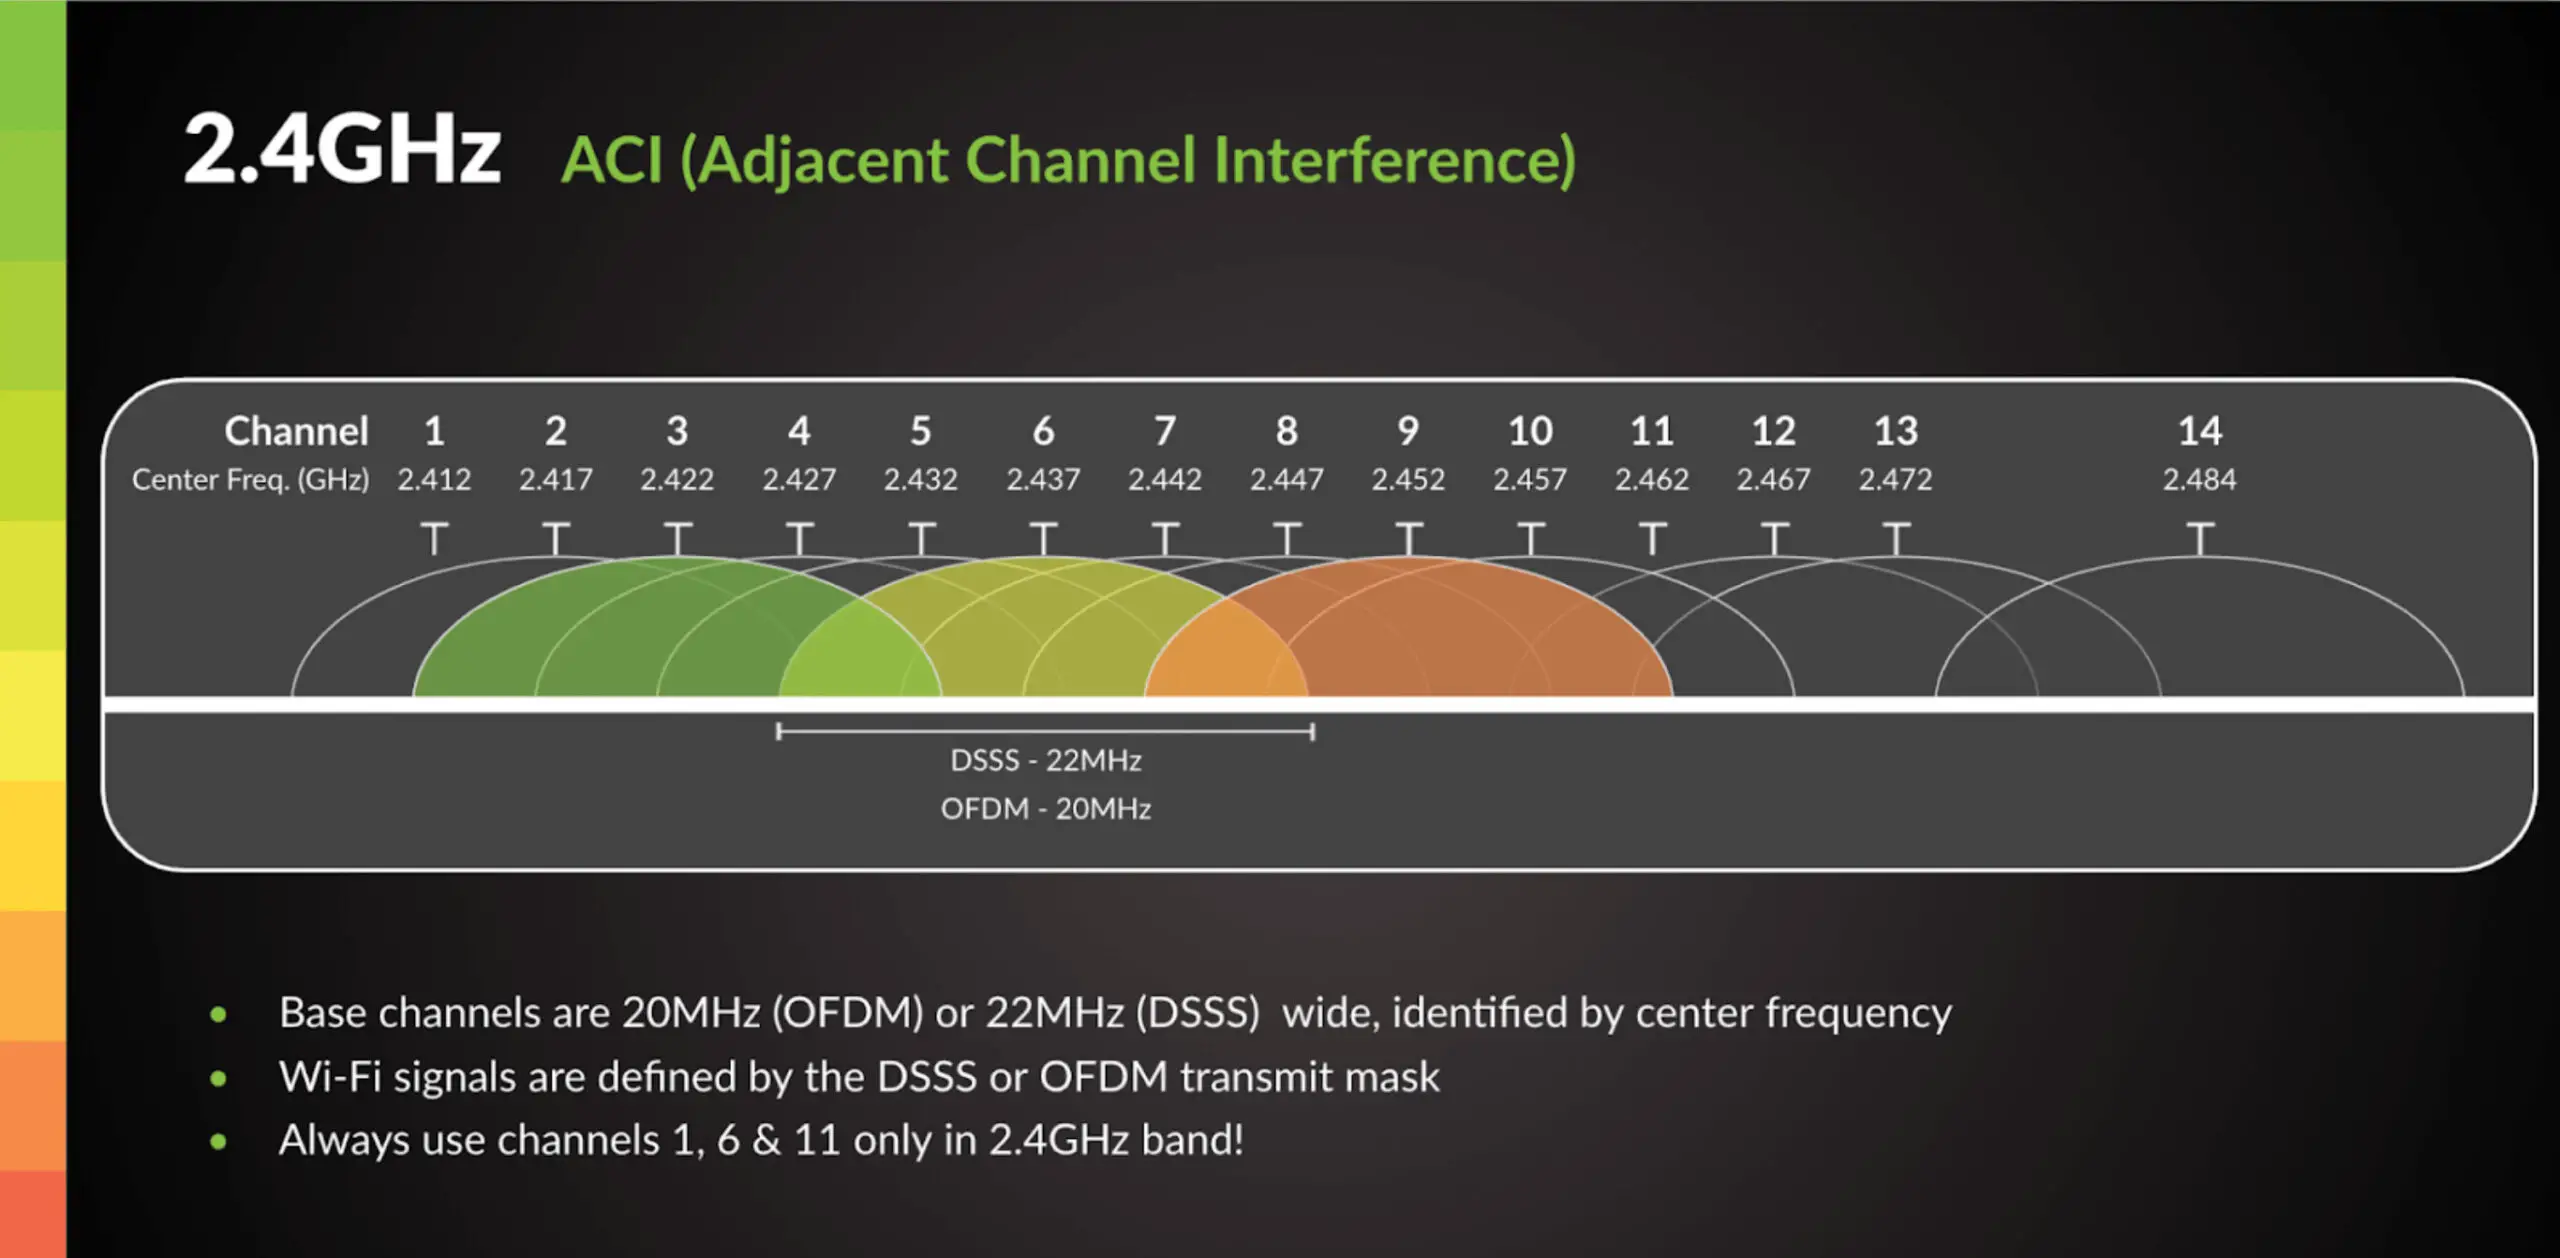 Is Spectrum Internet 2.4 Or 5Ghz